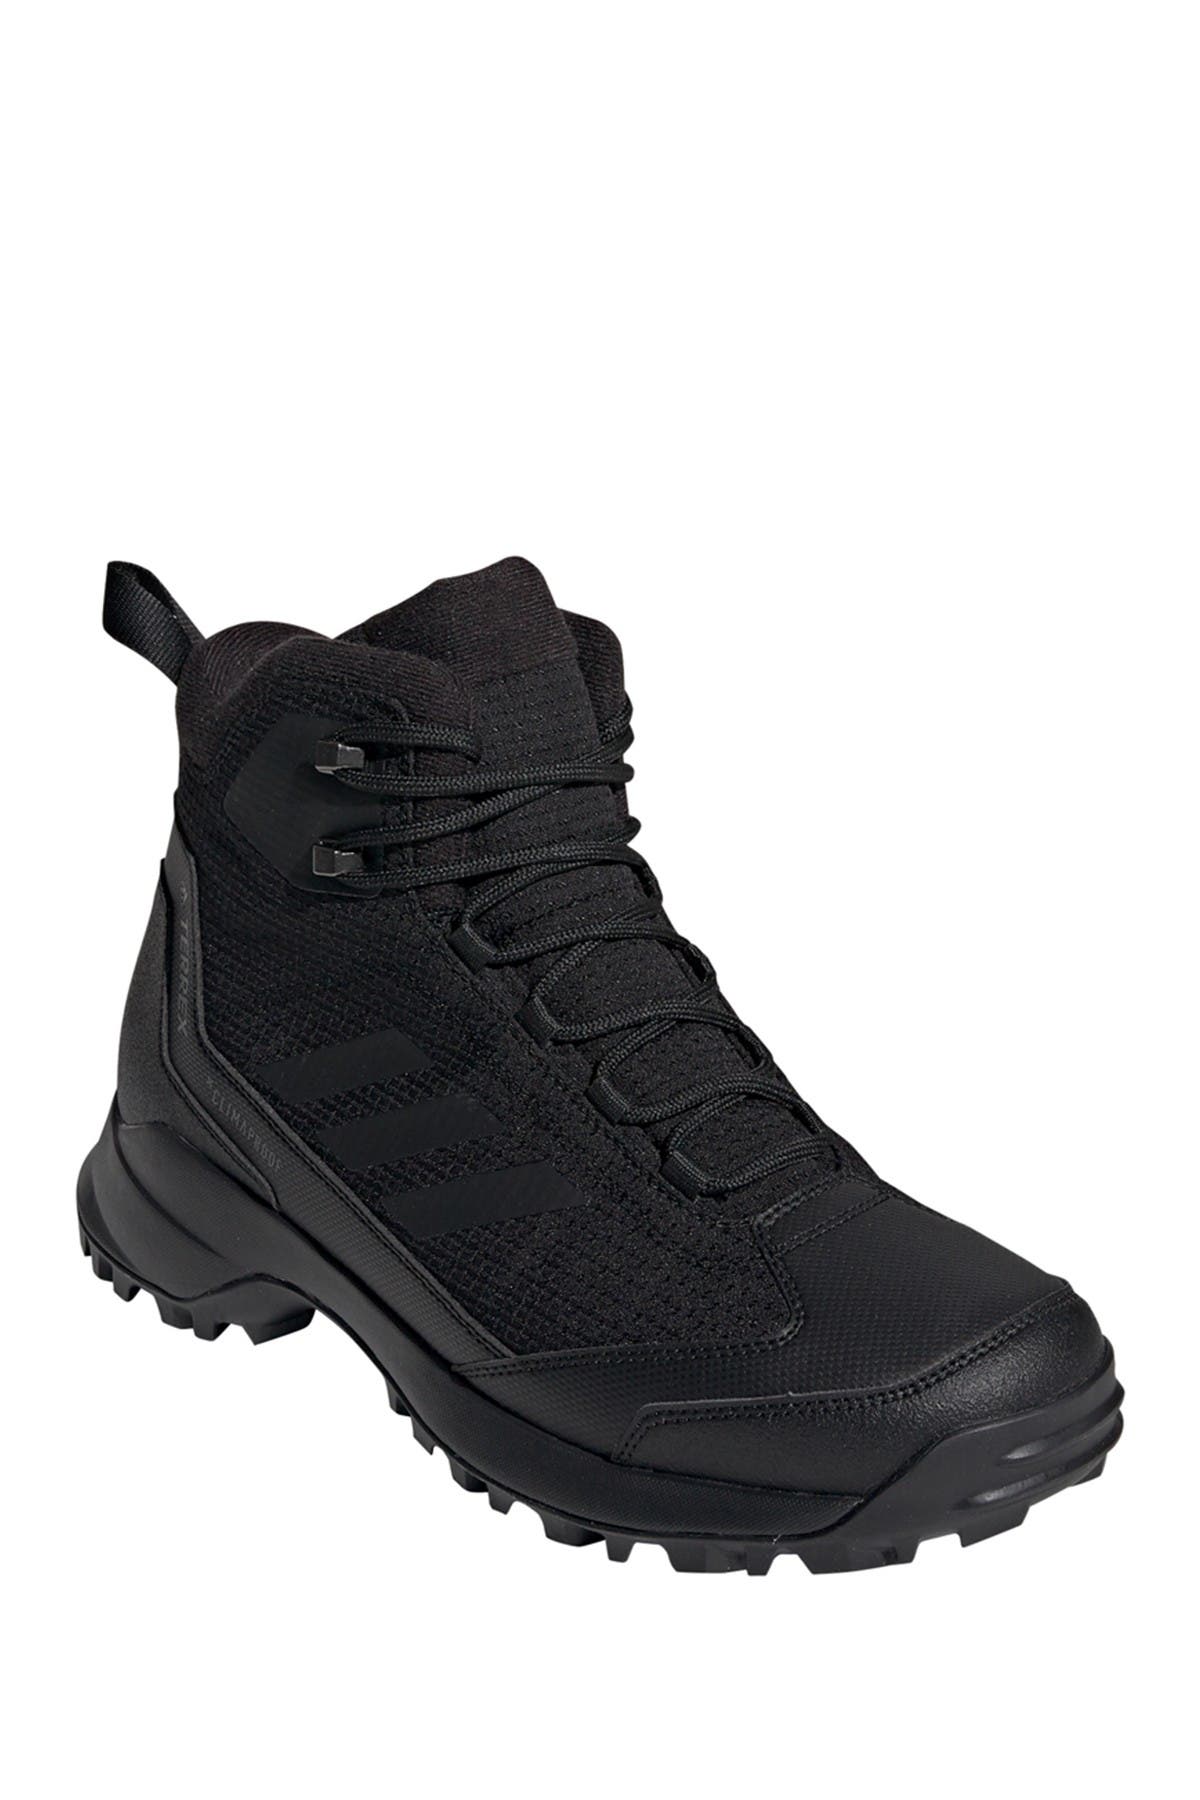 adidas terrex heron high walking boots